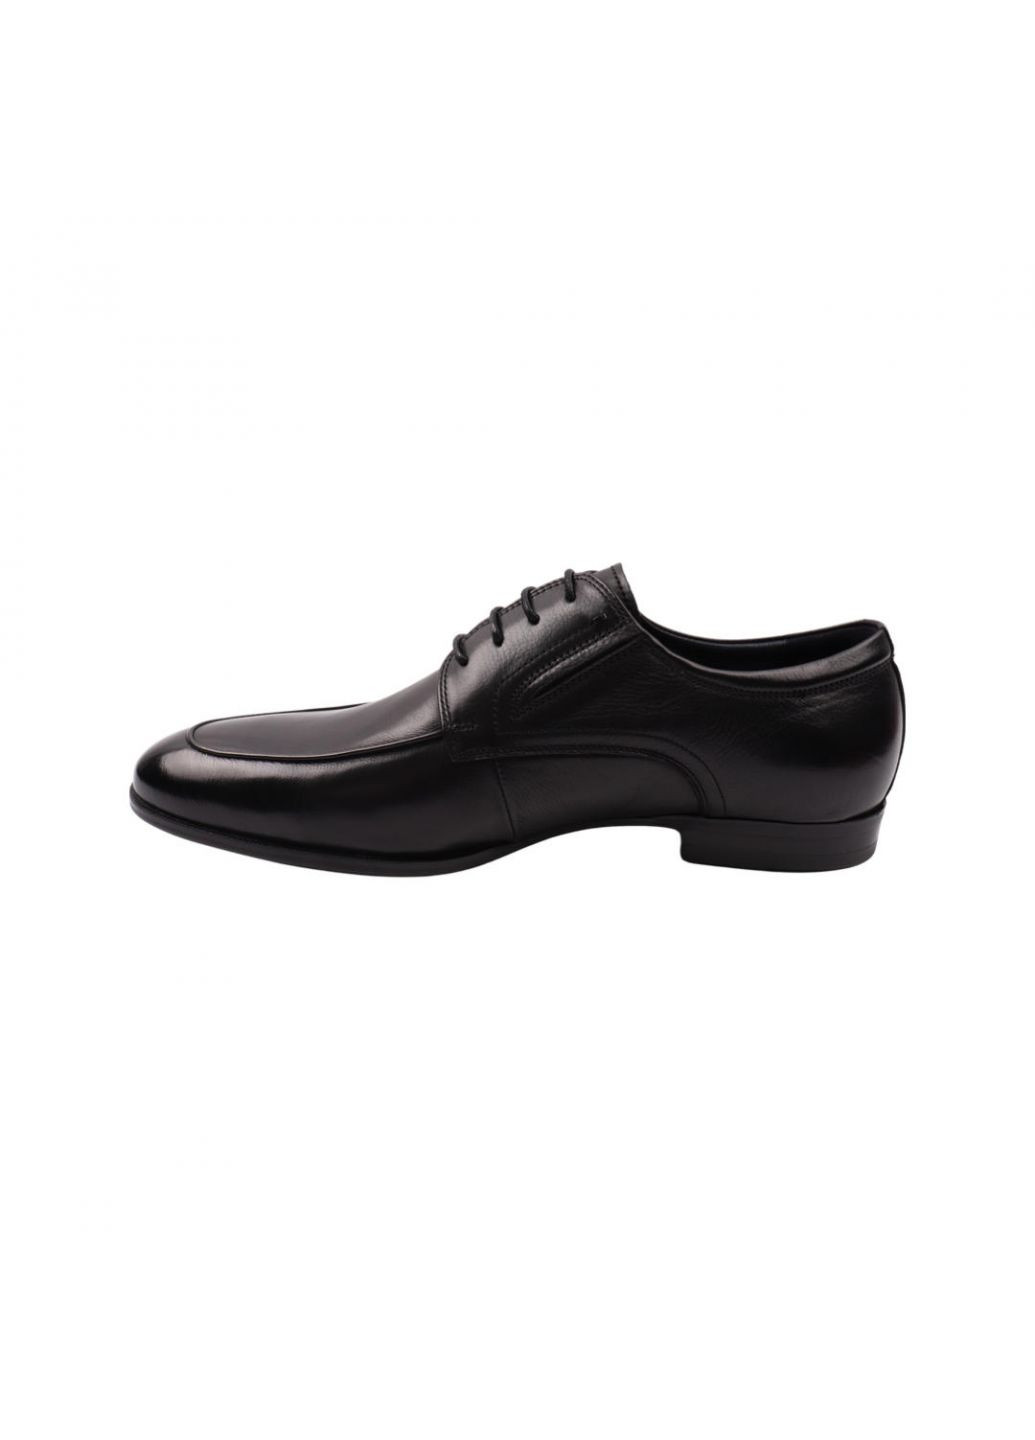 Туфлі чоловічі Lido Marinozi чорні натуральна шкіра Lido Marinozzi 254-22dt (257439094)